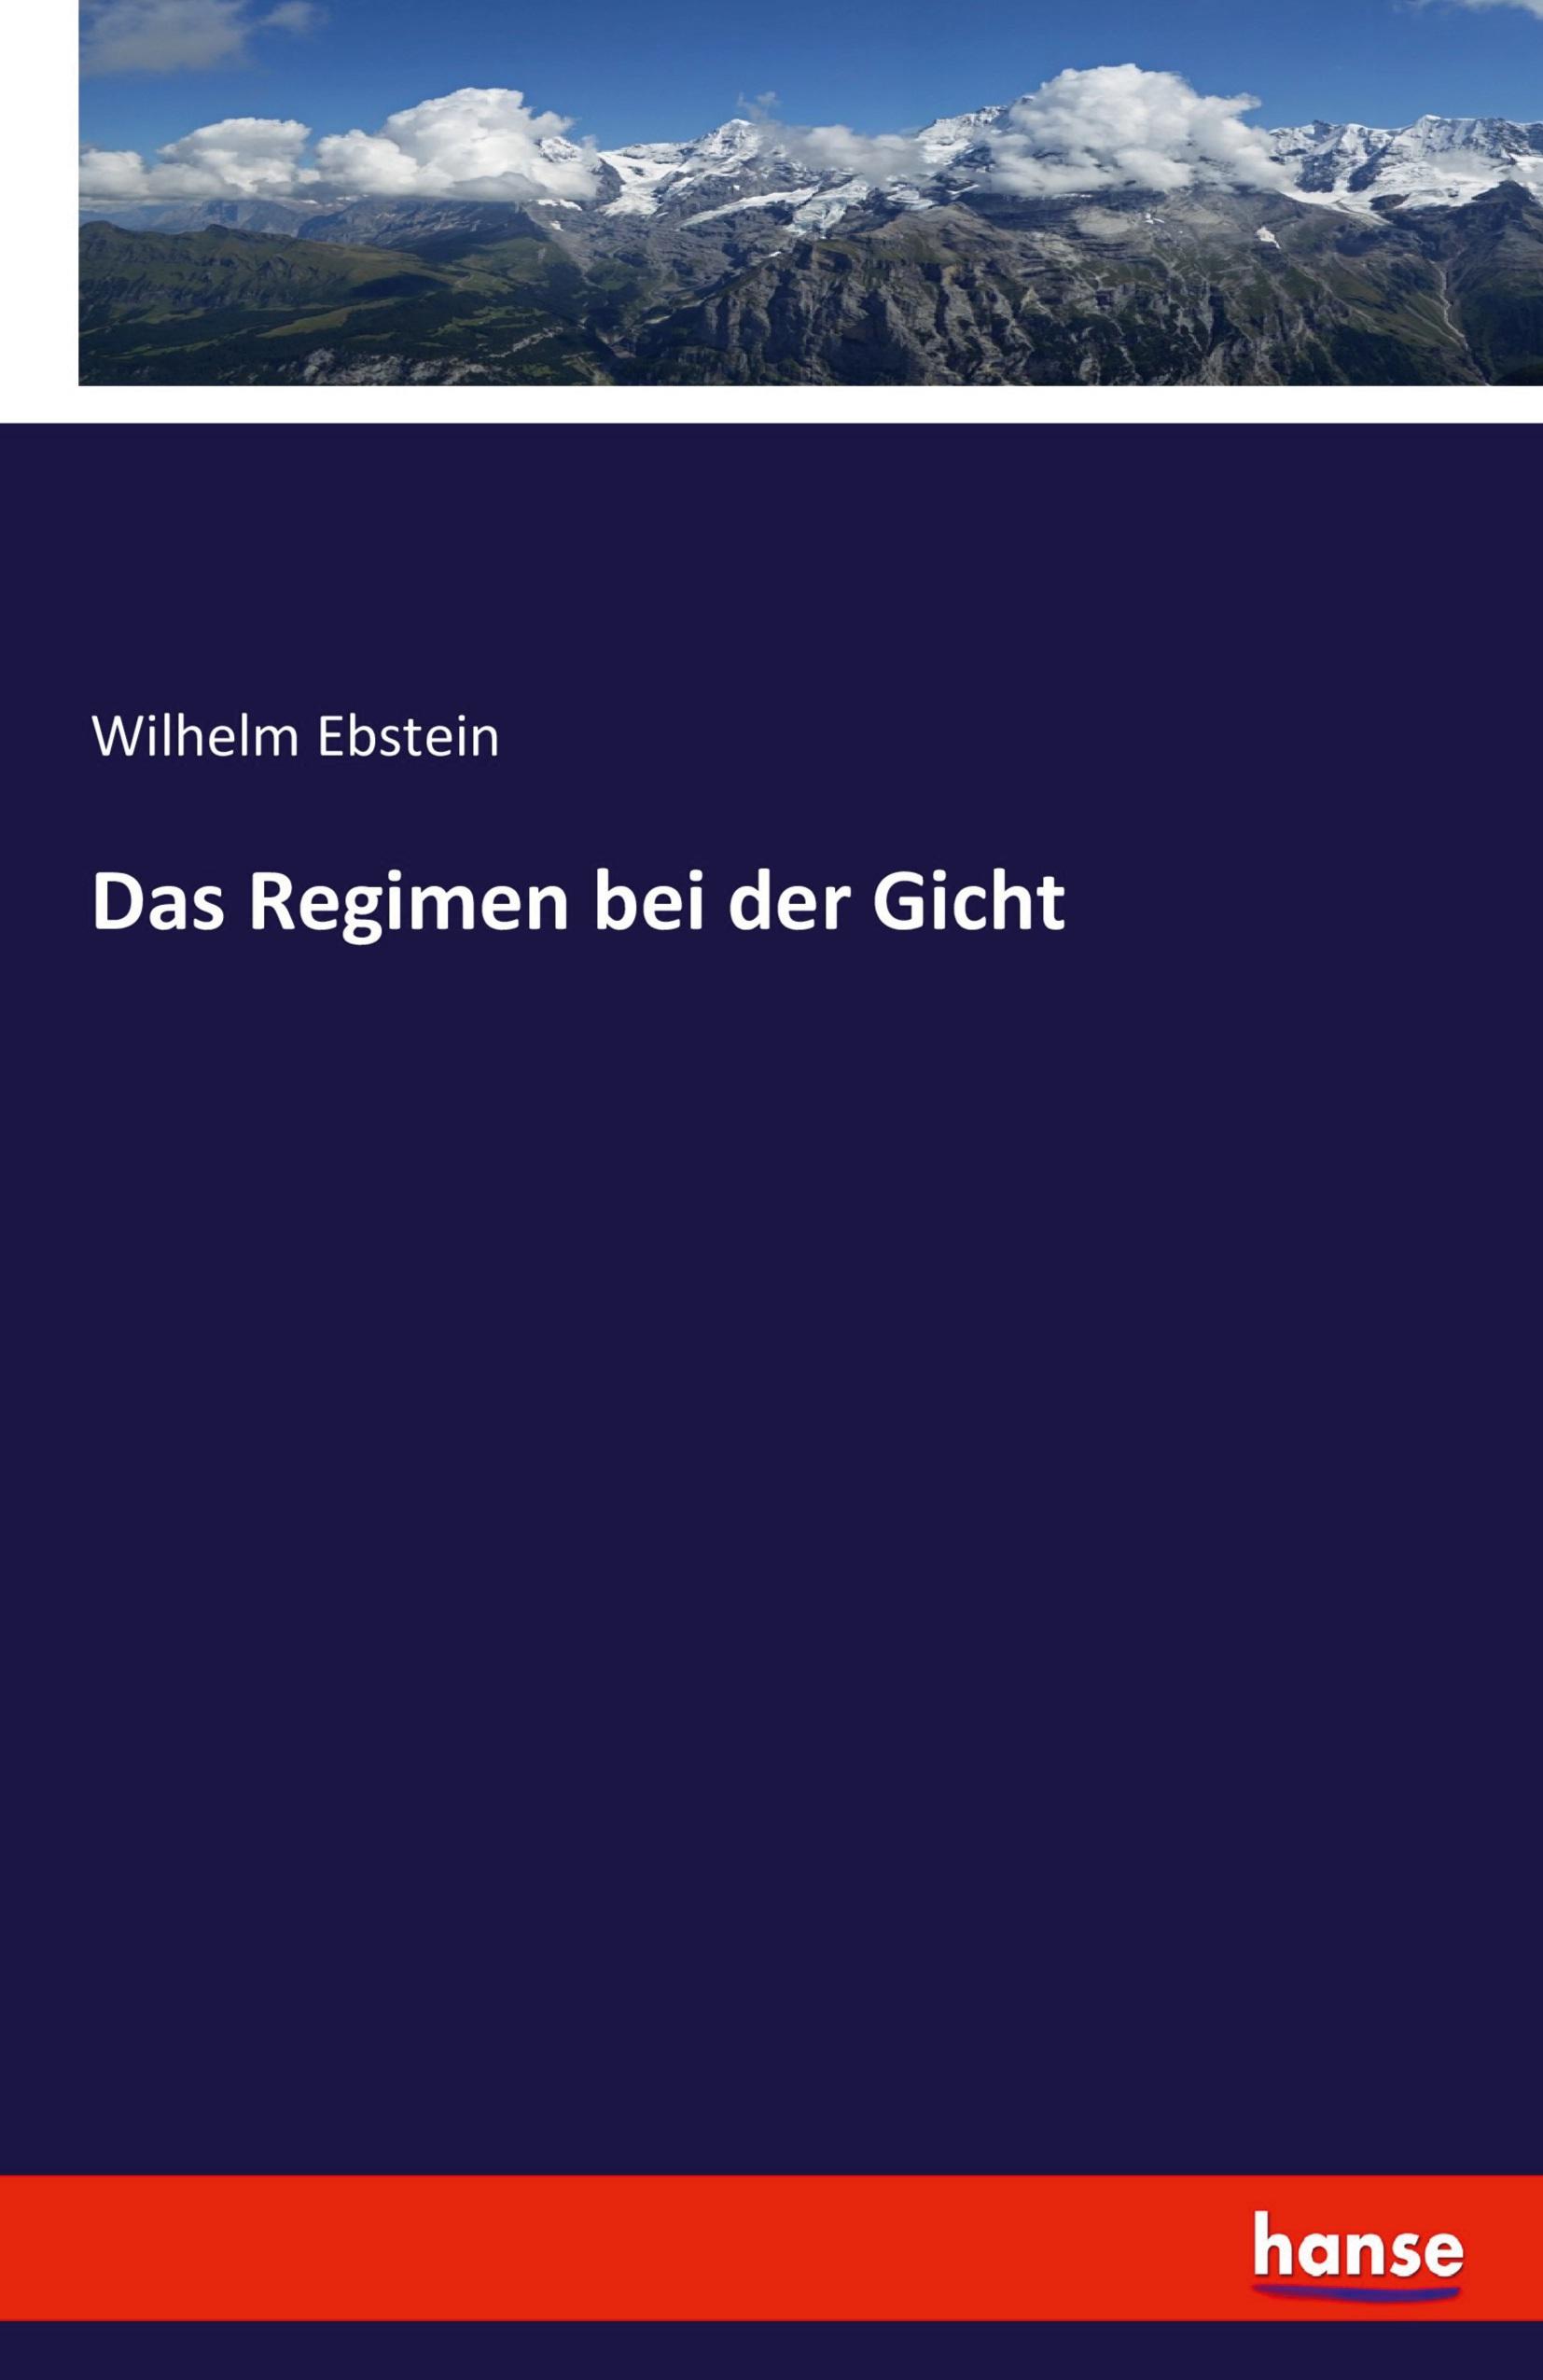 Das Regimen bei der Gicht - Ebstein, Wilhelm